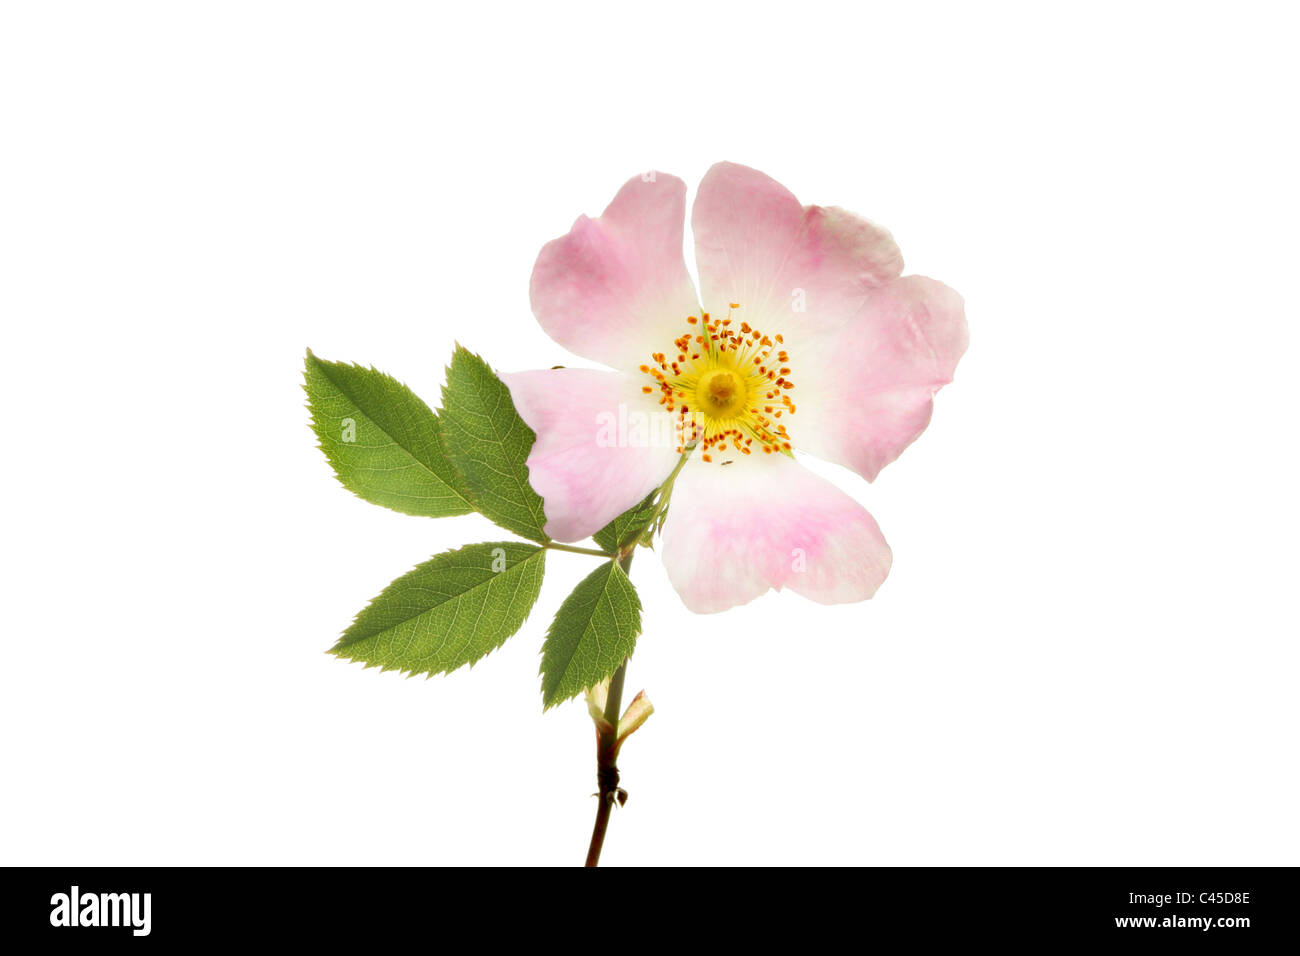 Primo piano di una rosa canina fiore e foglie isolata contro bianco Foto Stock